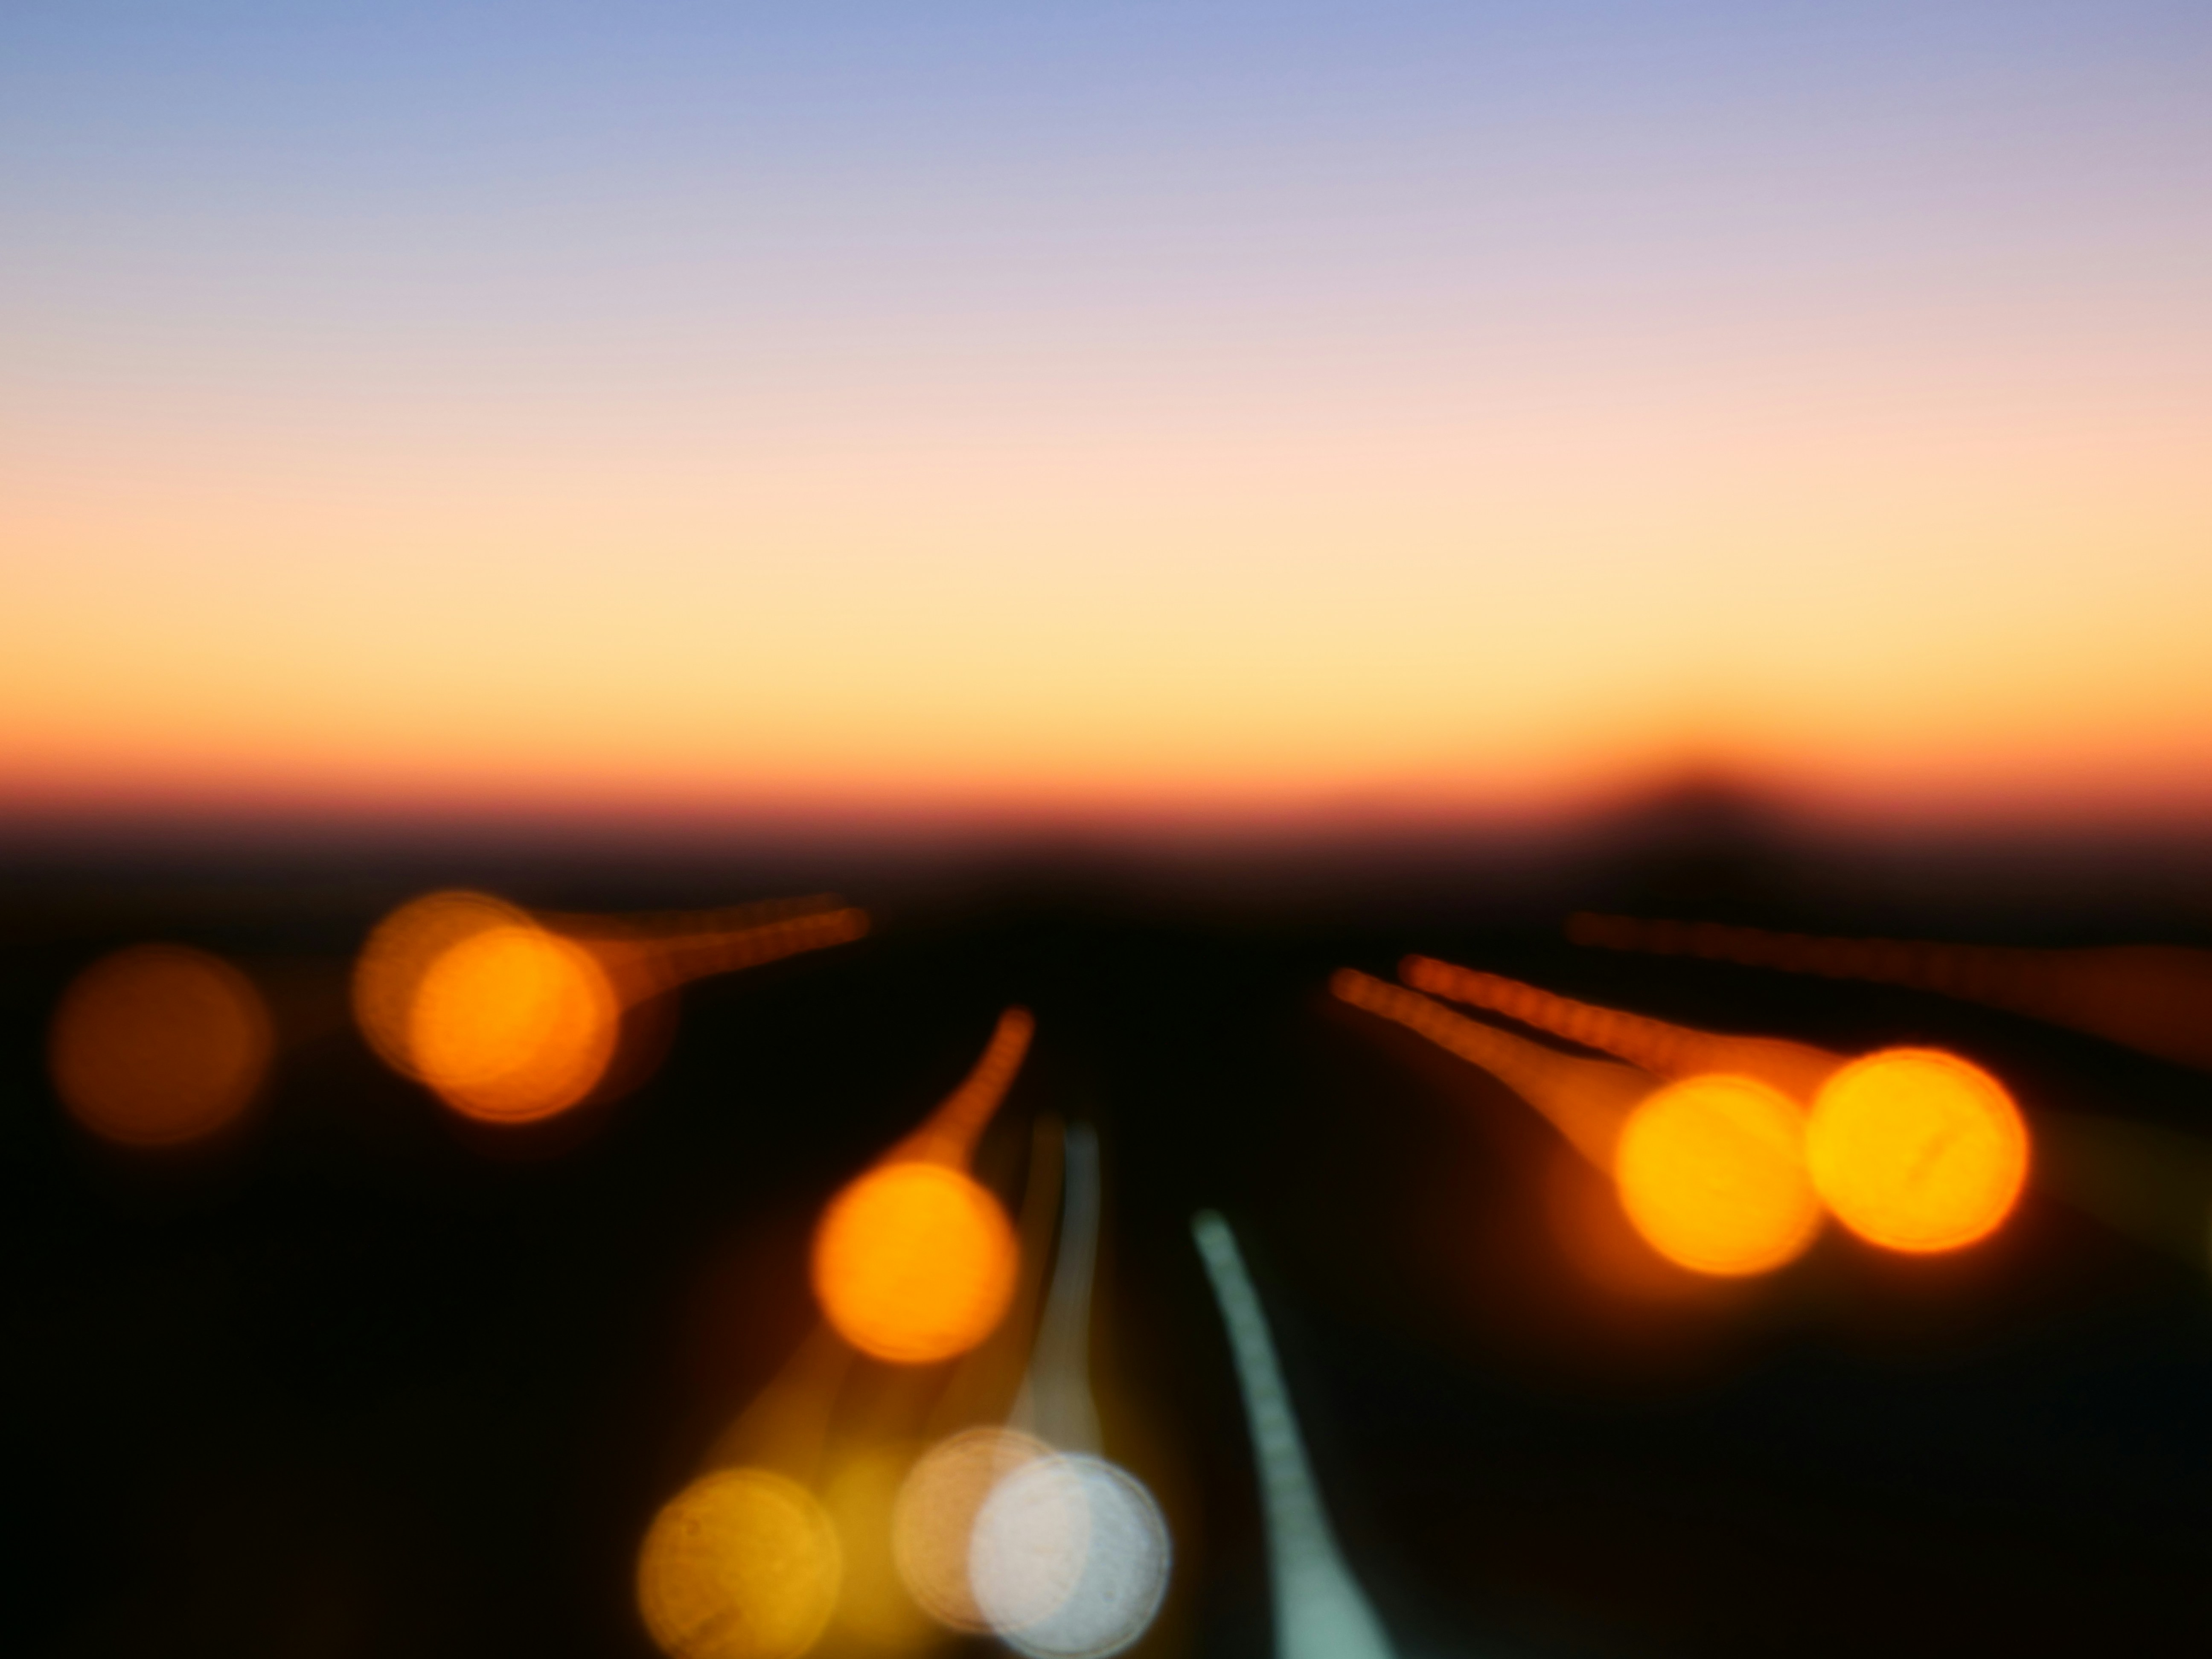 Immagine di strada, all'orizzone un tramonto, il tutto estremamente sfuocata.